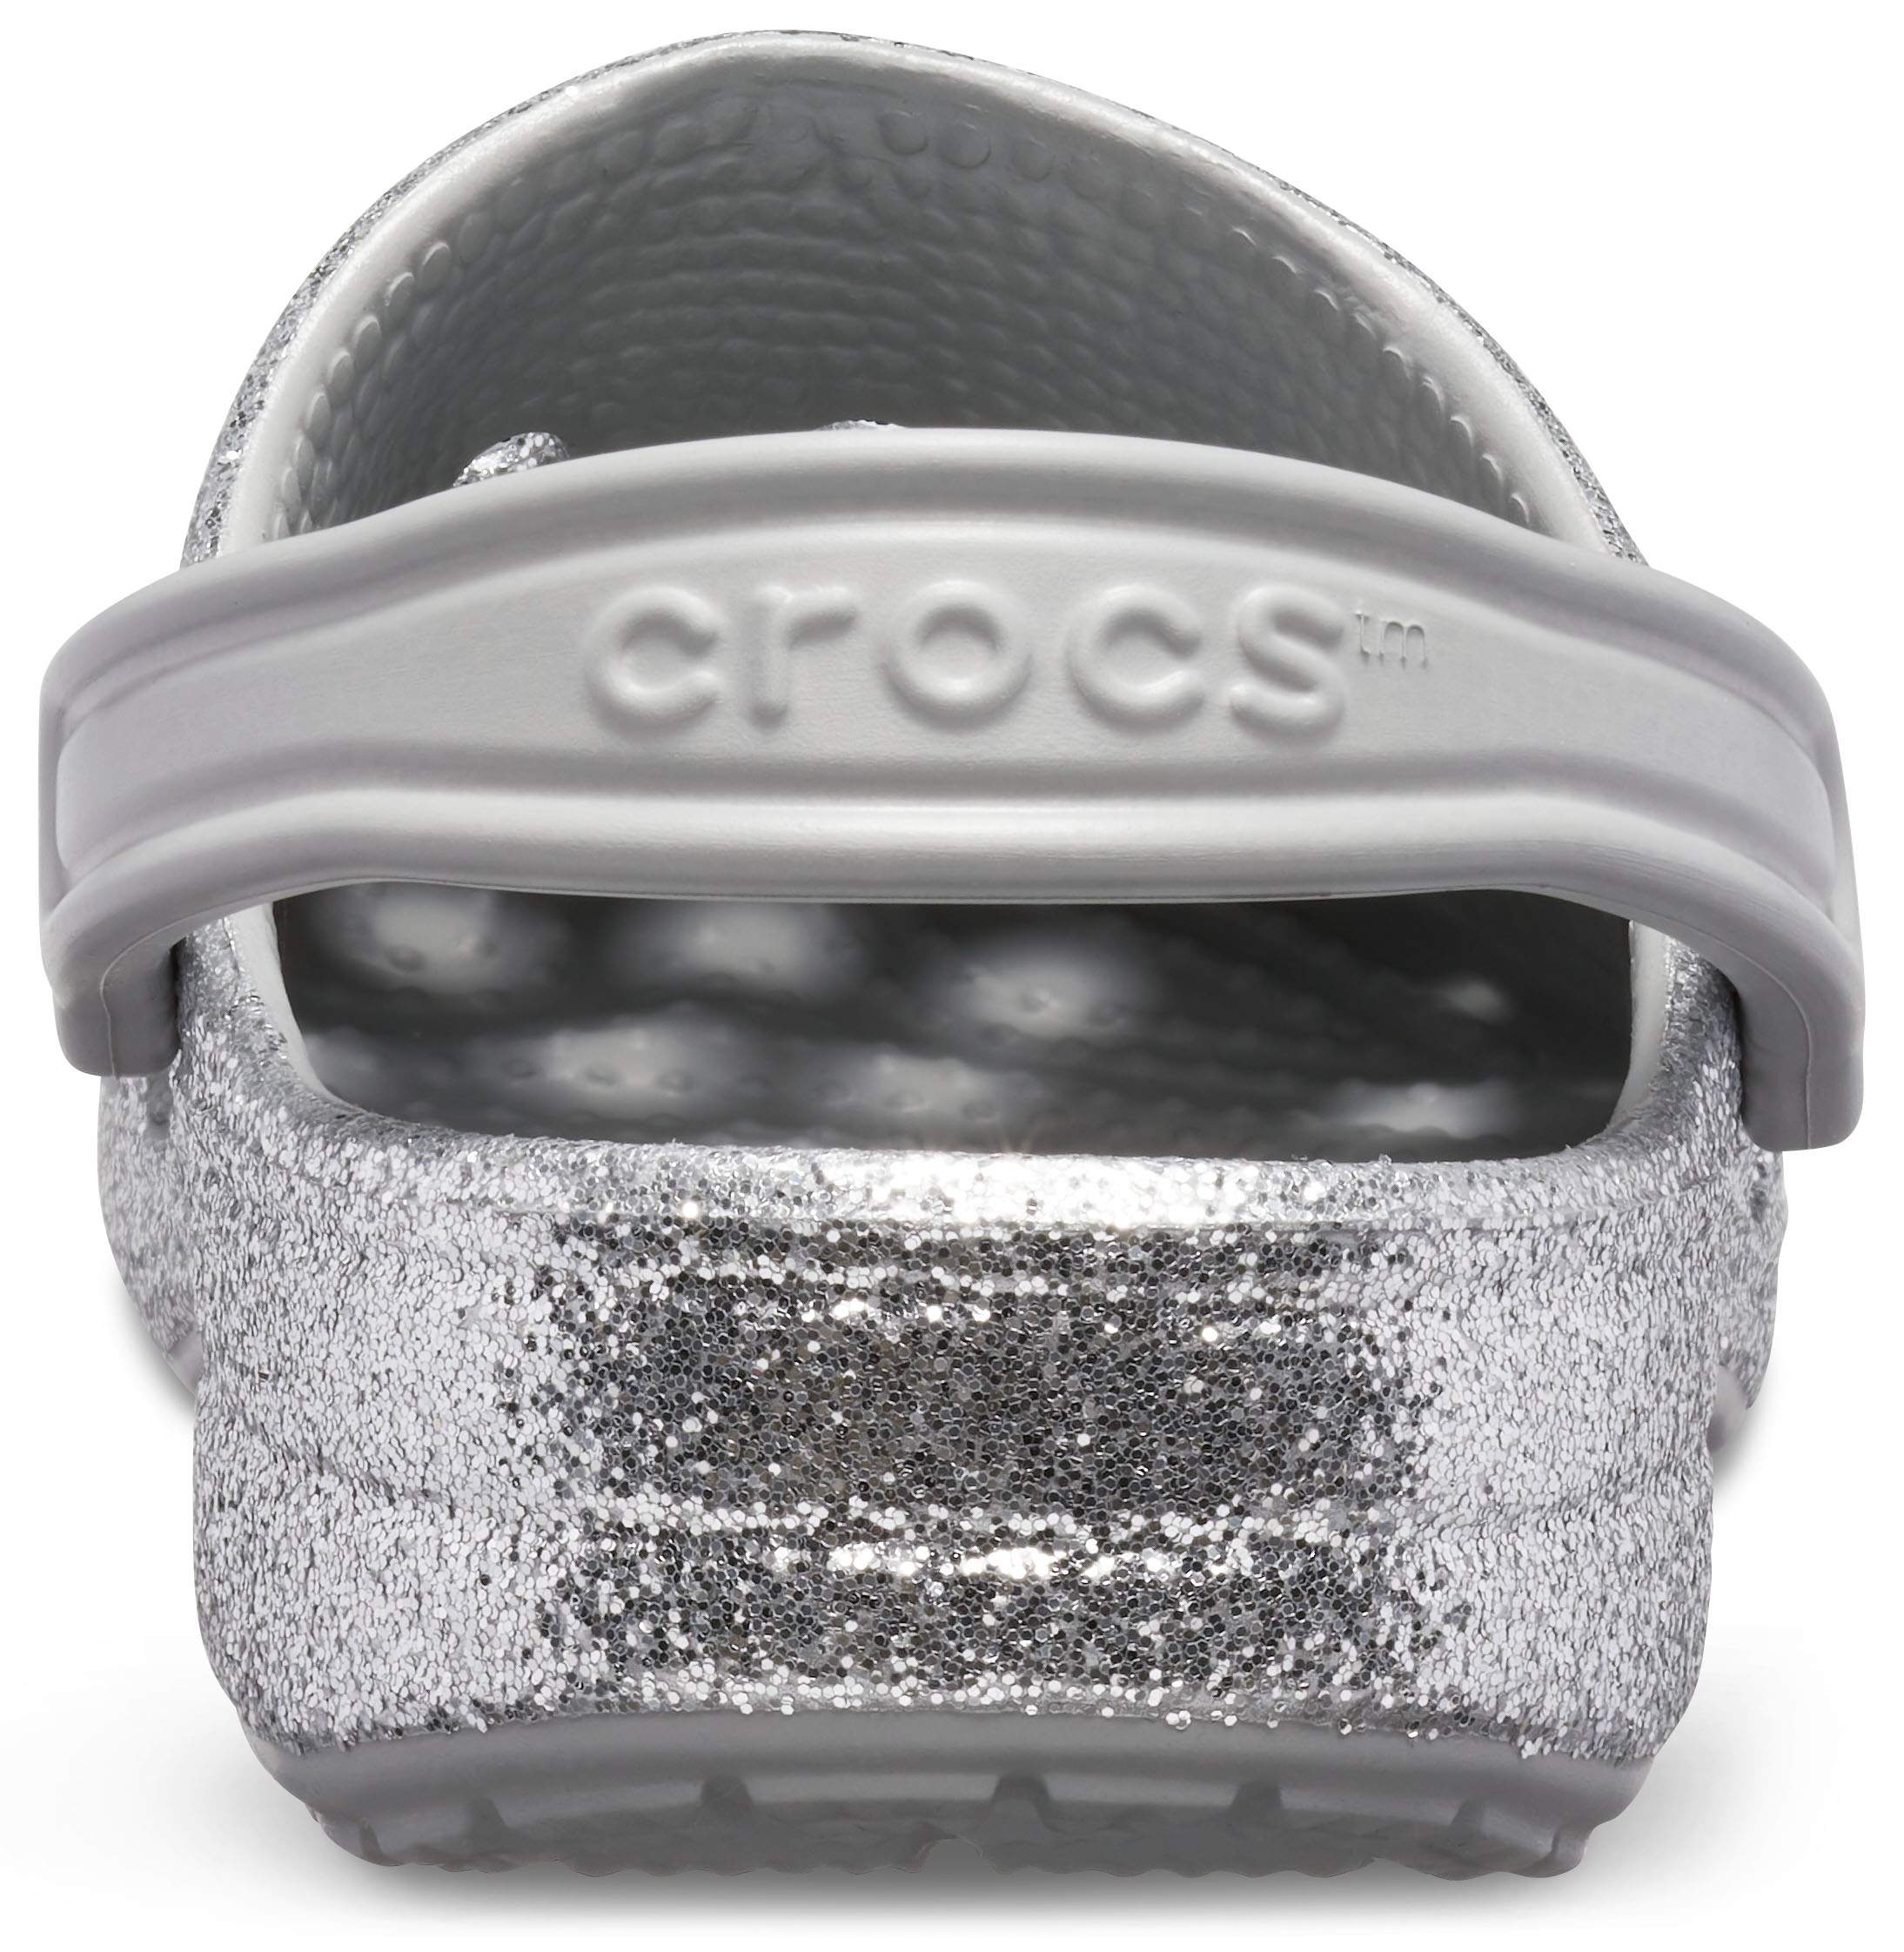 silver sparkly crocs